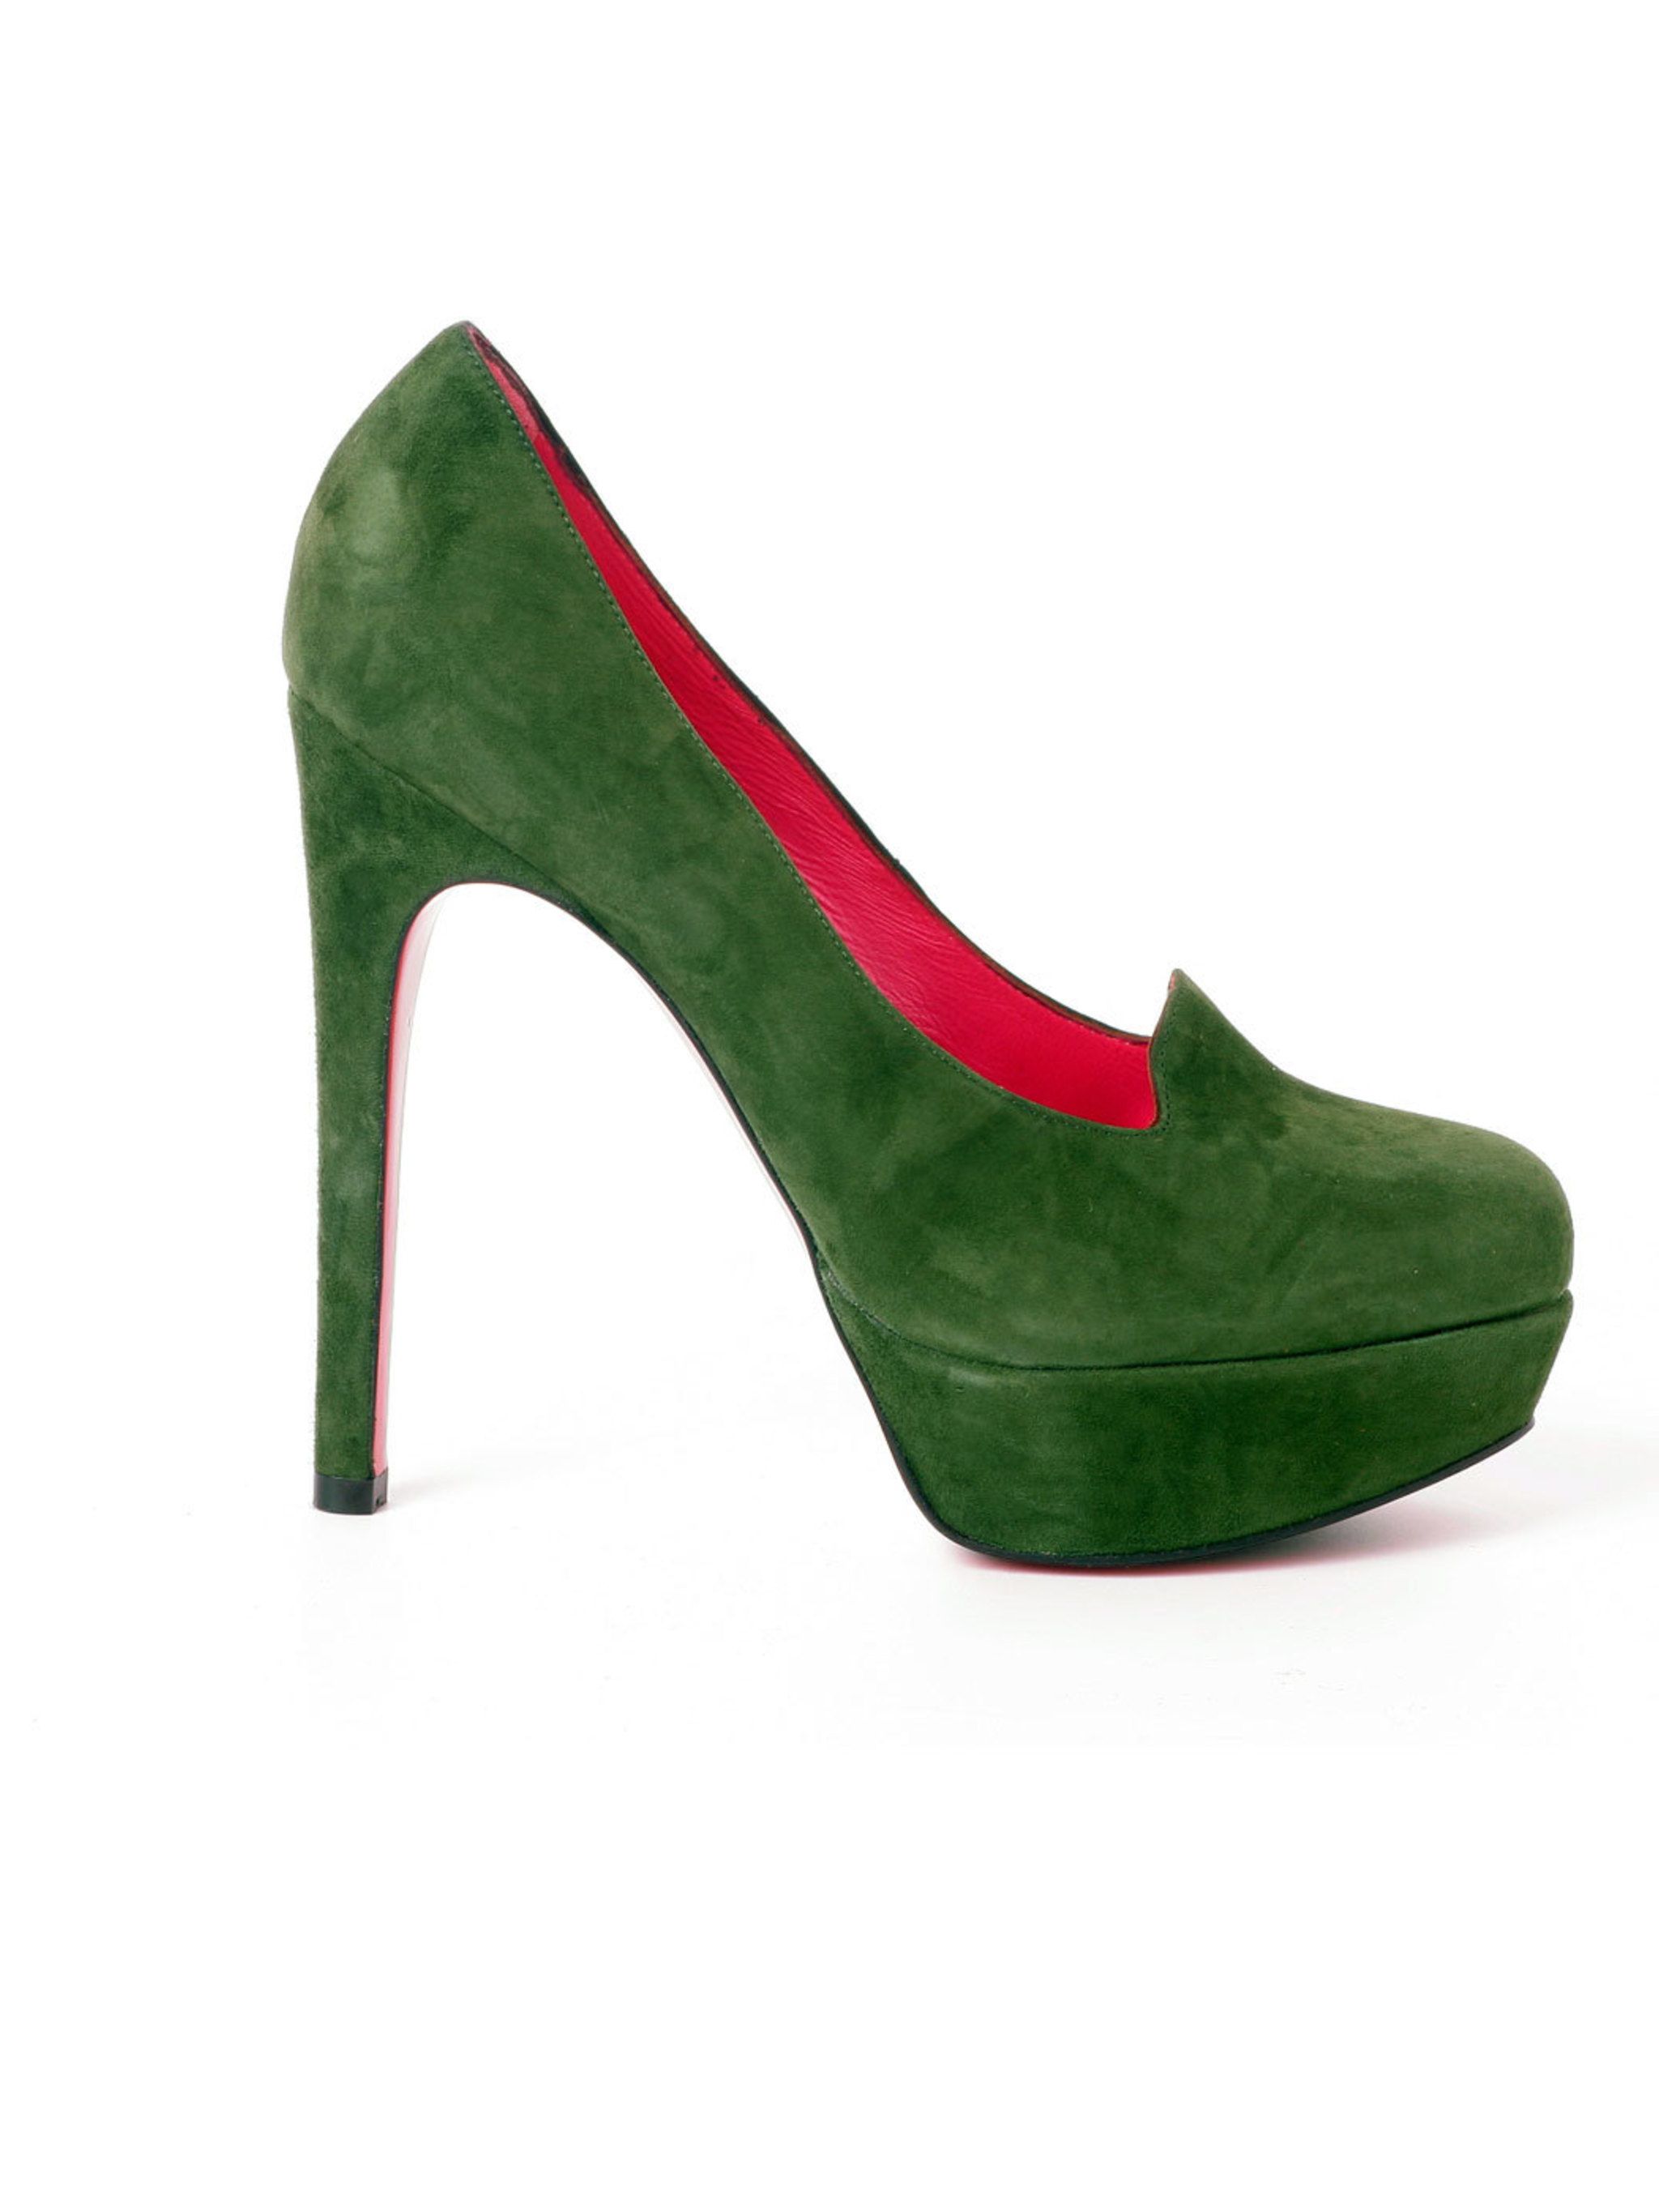 green suede heels uk